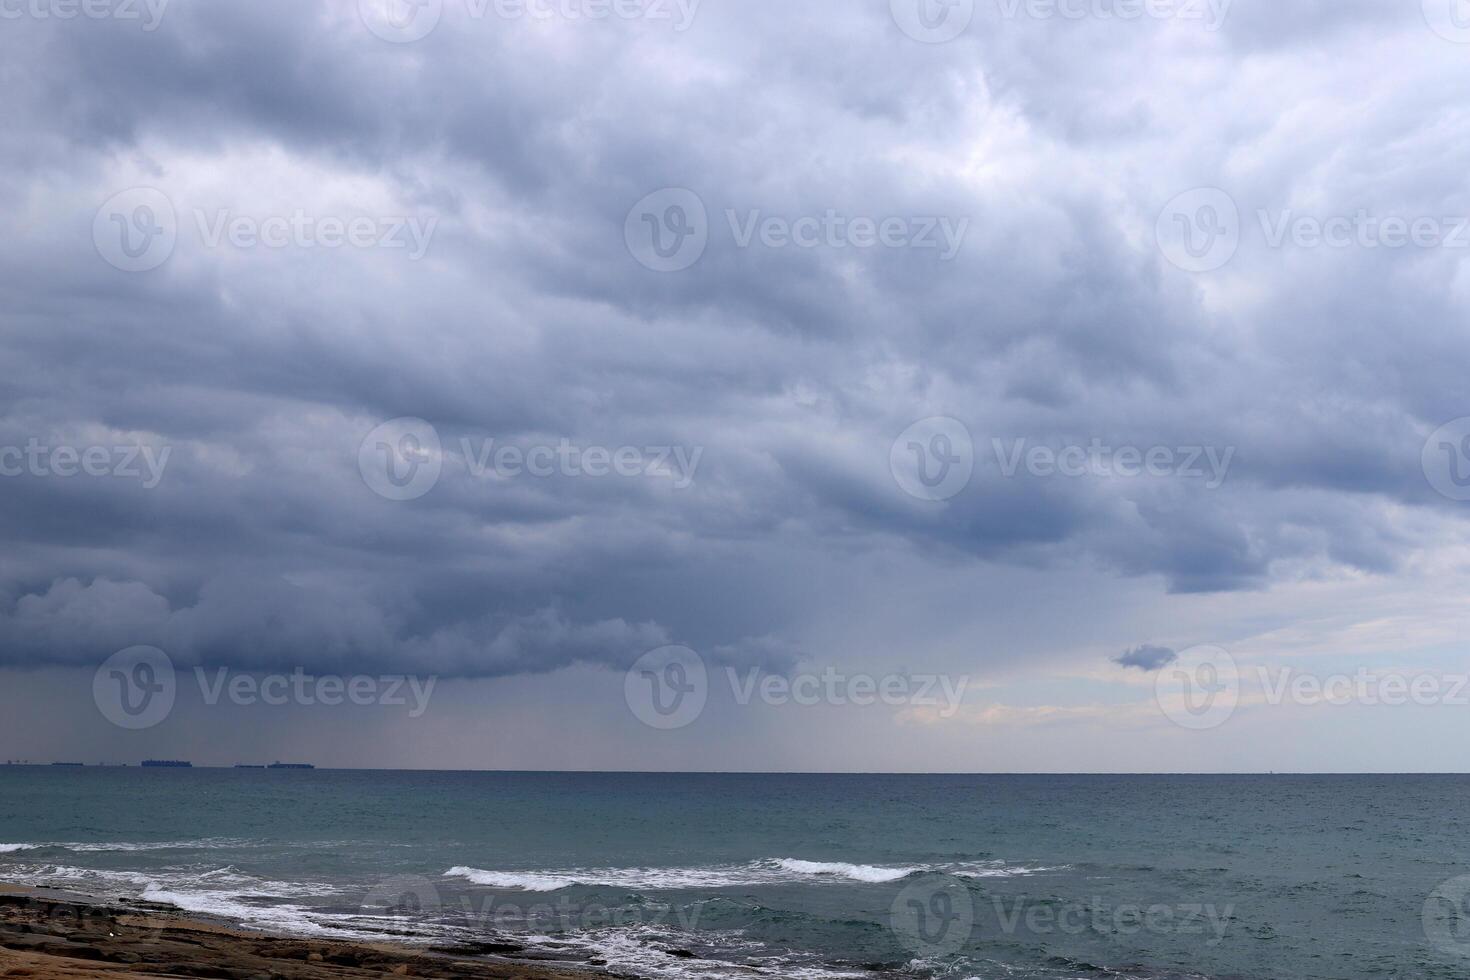 regn moln i de himmel över de medelhavs hav. foto